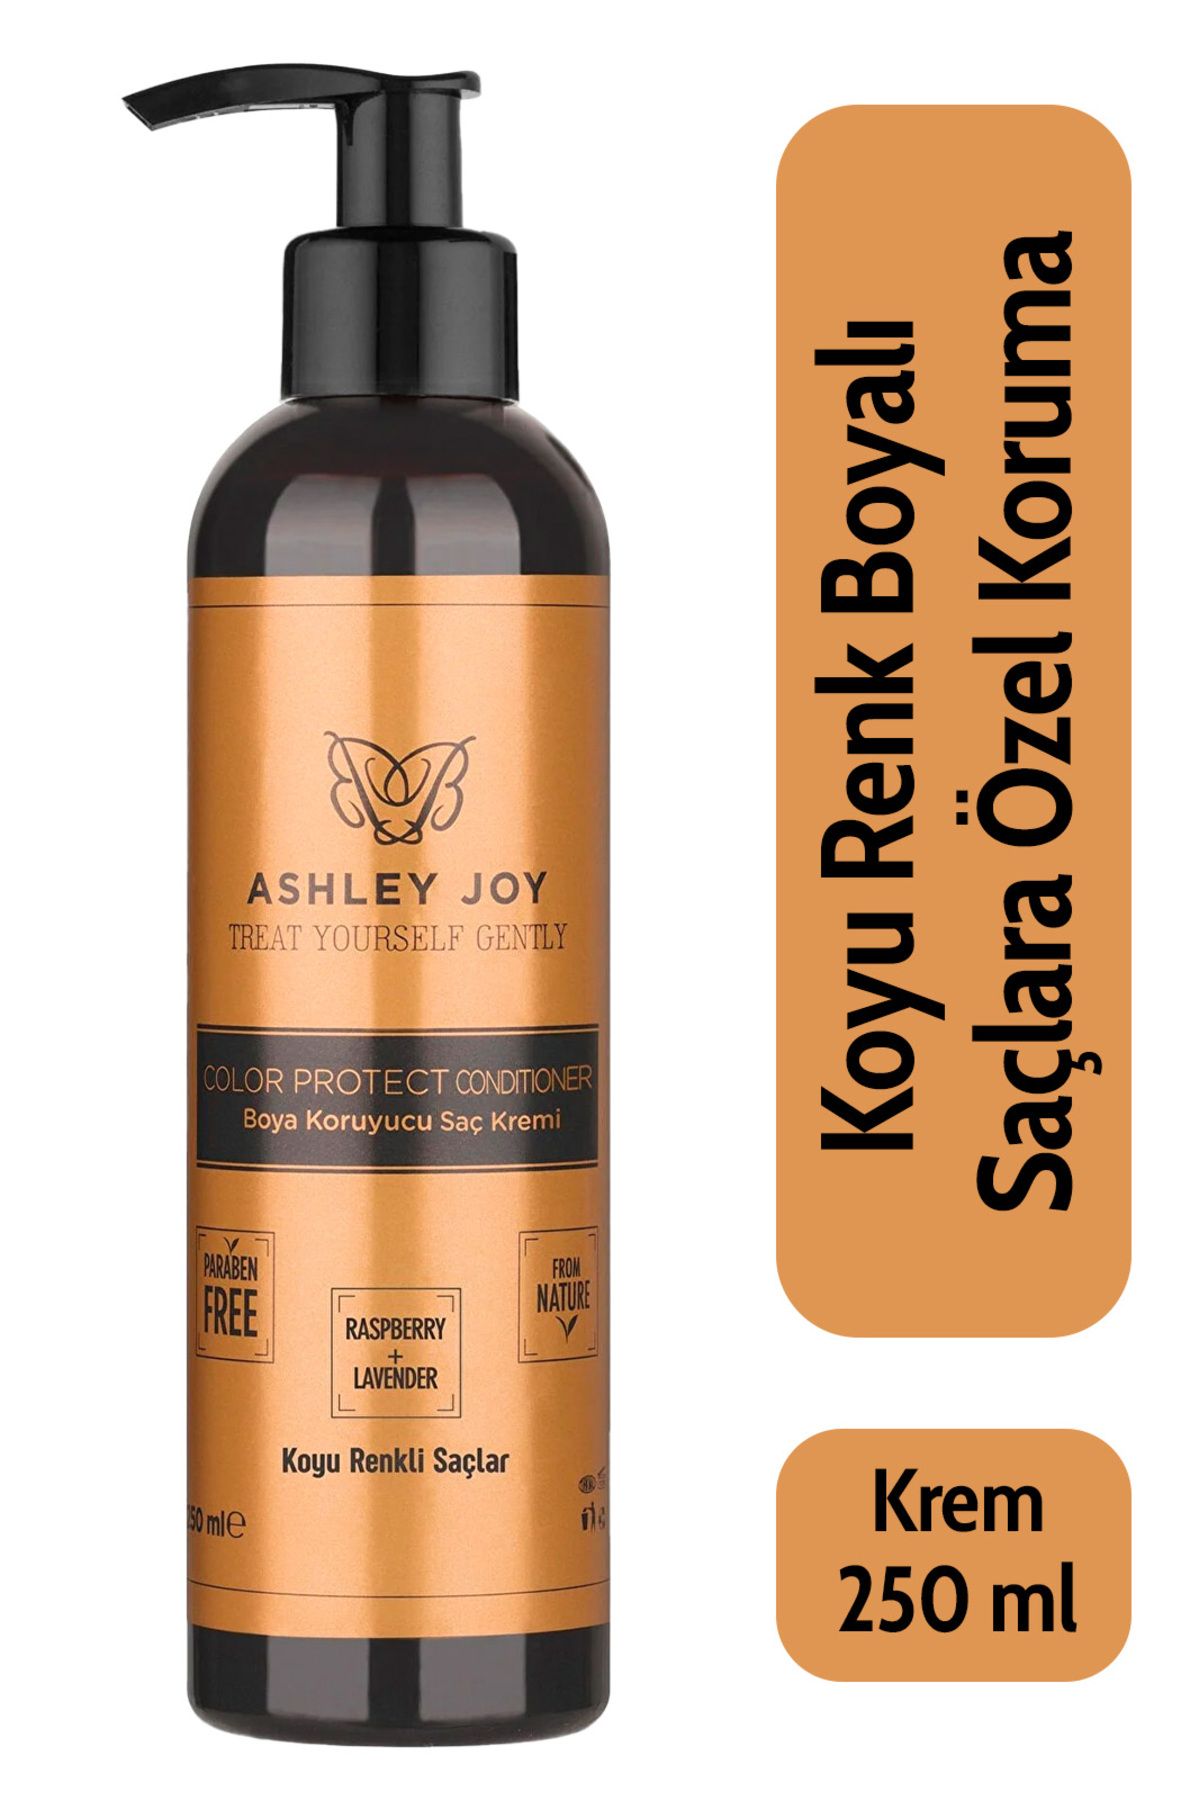 Ashley Joy Koyu Renk Boyalı Saçlara Özel Lavanta Ahududu Özlü Renk Koruyucu Saç Kremi 250 ml